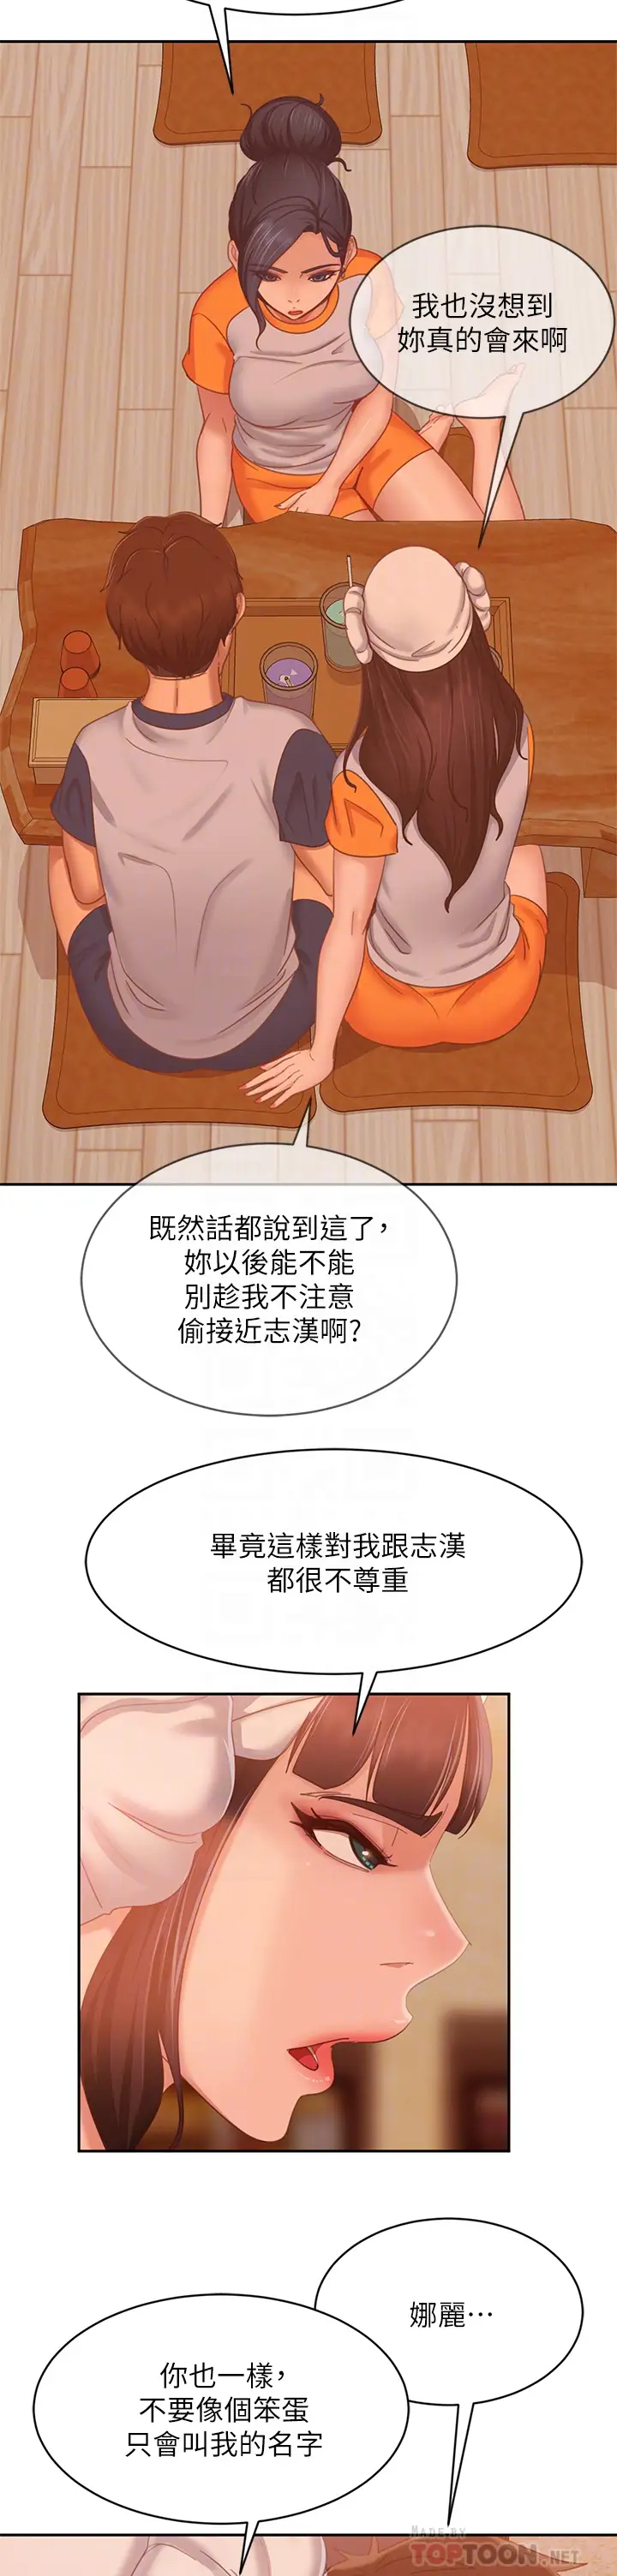 韩国污漫画 不良女房客 第67话敏恩色色的闹钟服务 14